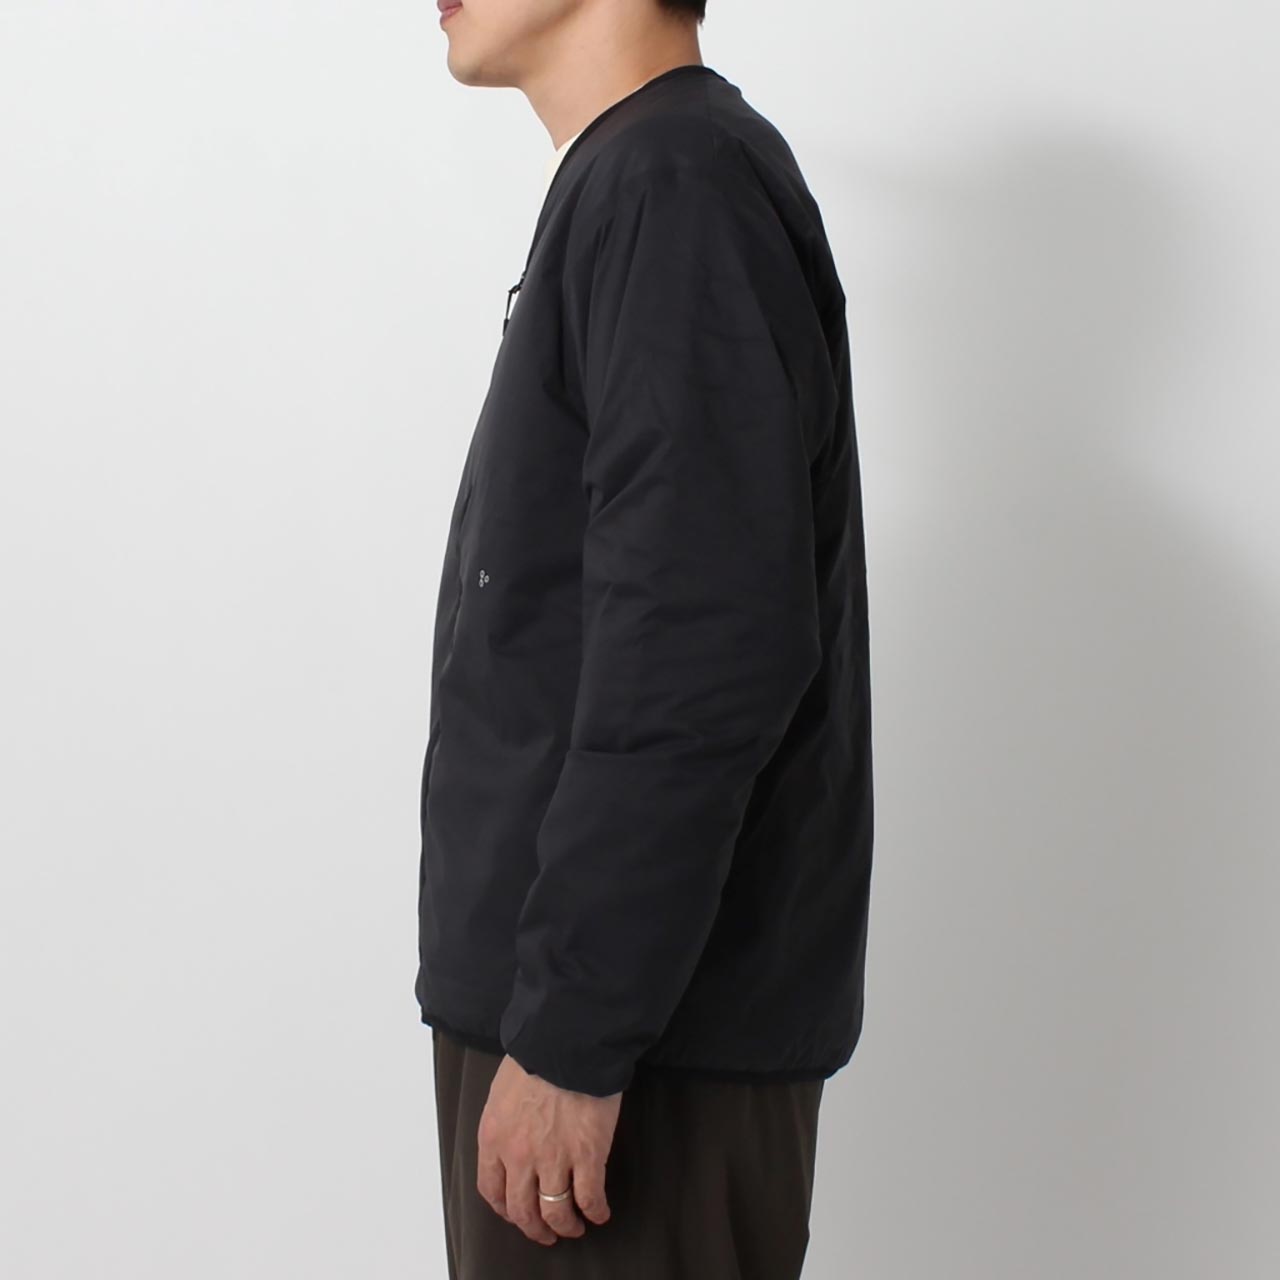 Euston Jacket - Black • Gymphlex • Beautiful, practical clothing Made ...